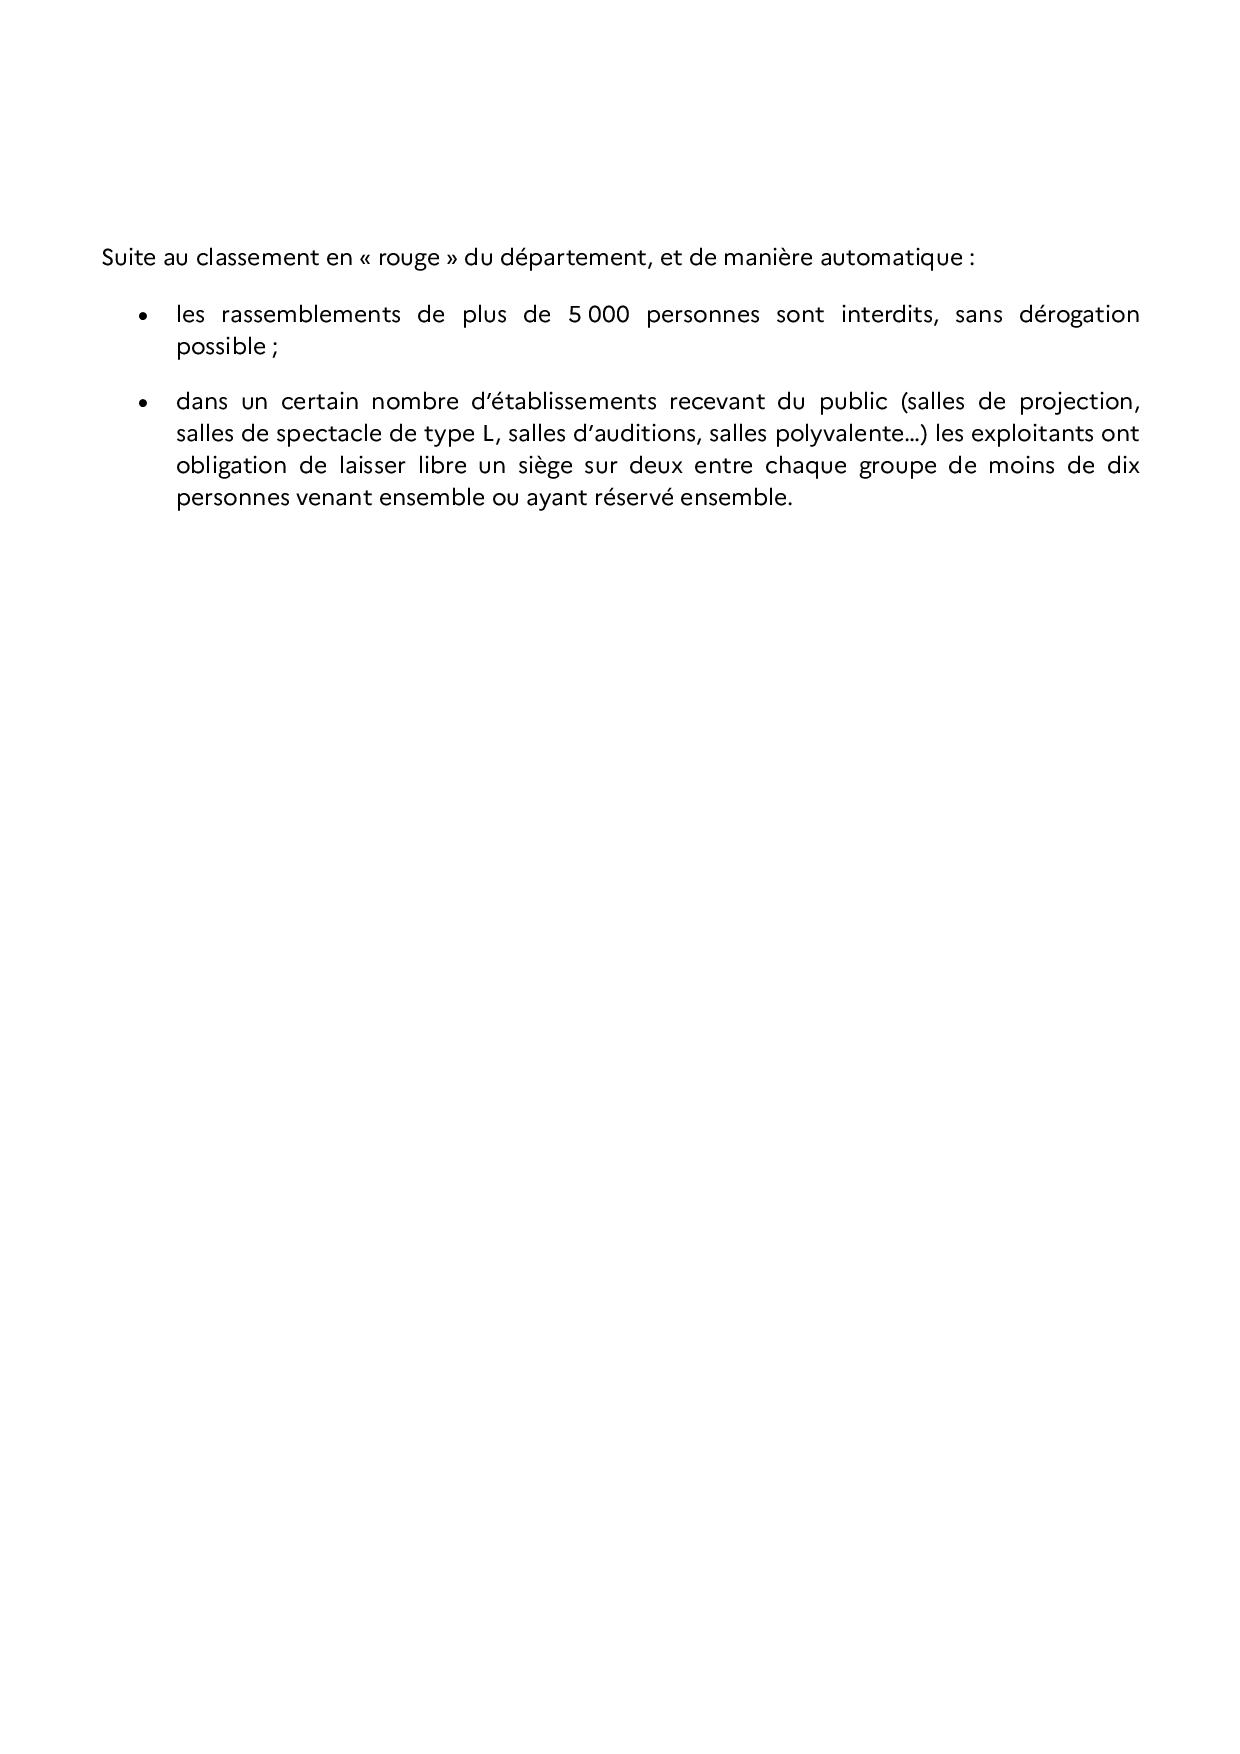 2020 09 15 renforcement des mesures sanitaires pour lutter contre la propagation du virus dans le Pas de Calais page 004